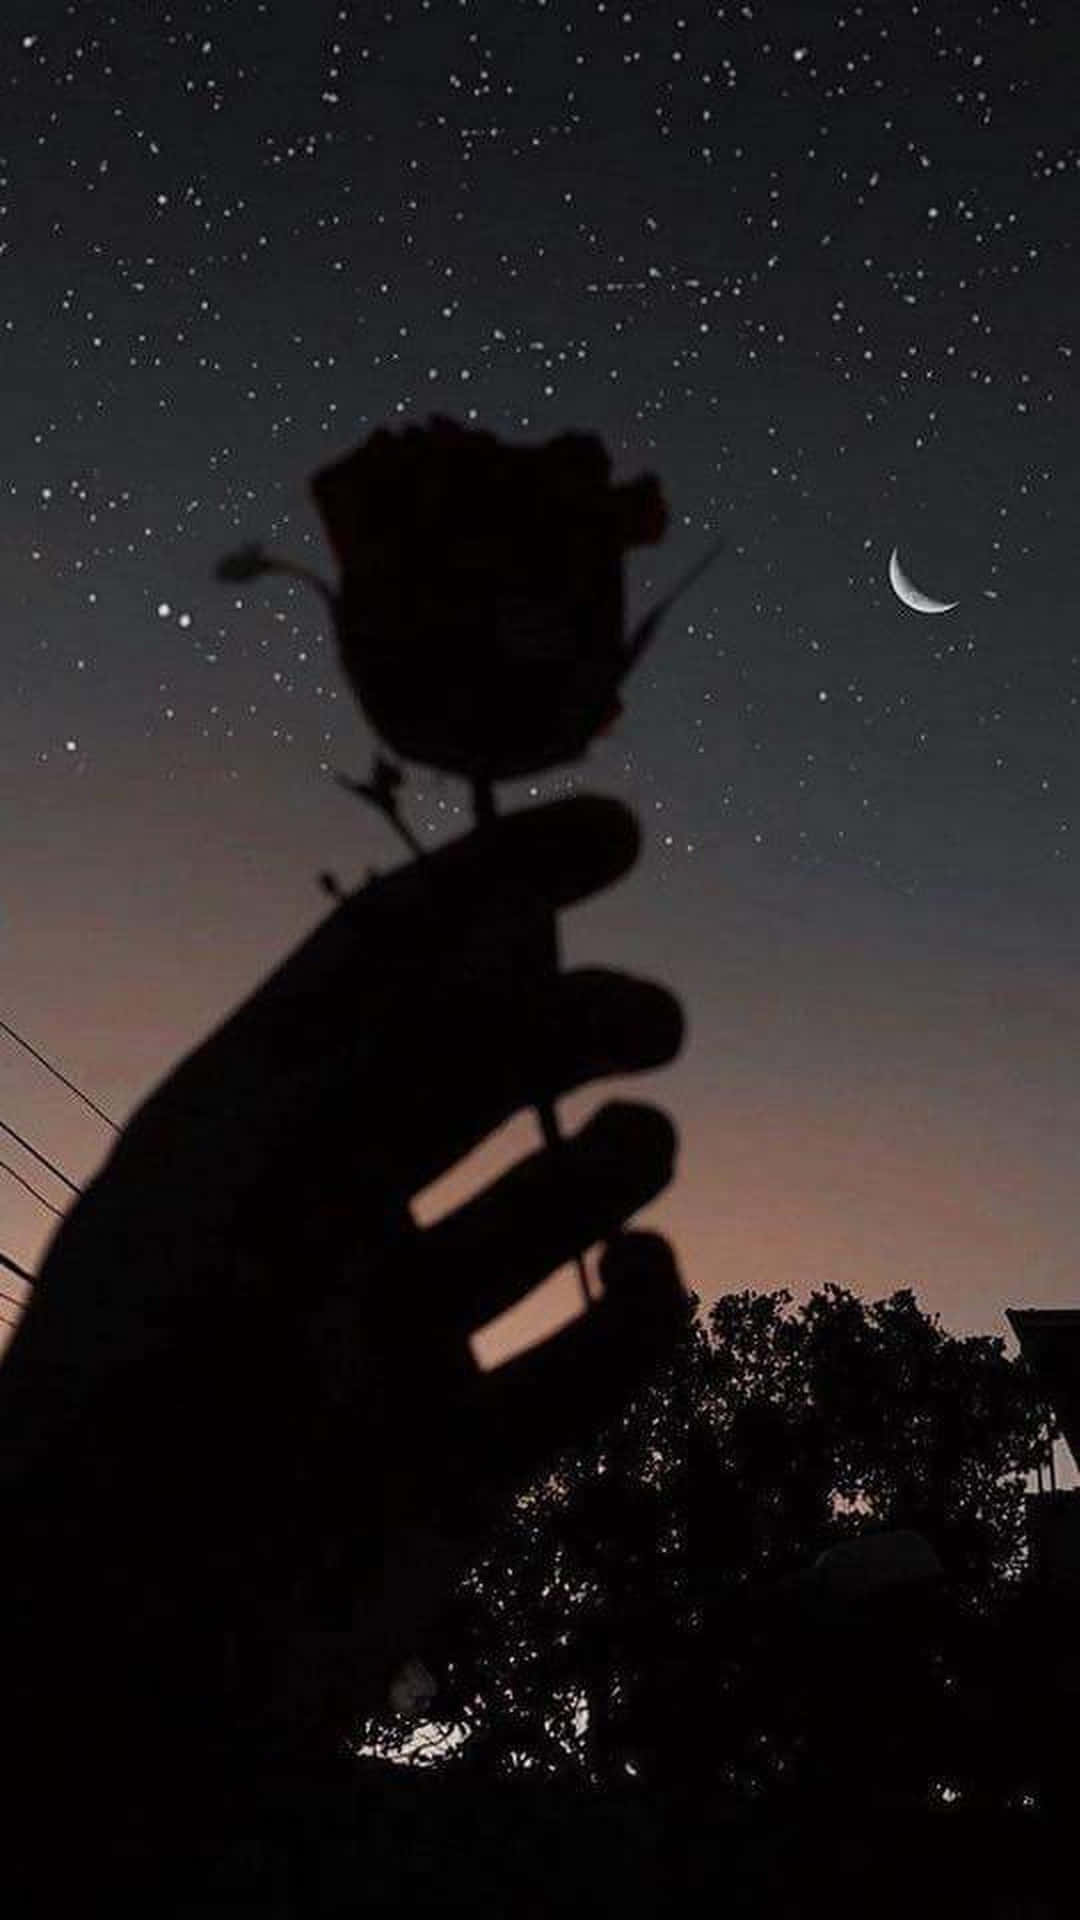 Einehand Hält Eine Rose Im Himmel Mit Mond Und Sternen. Wallpaper